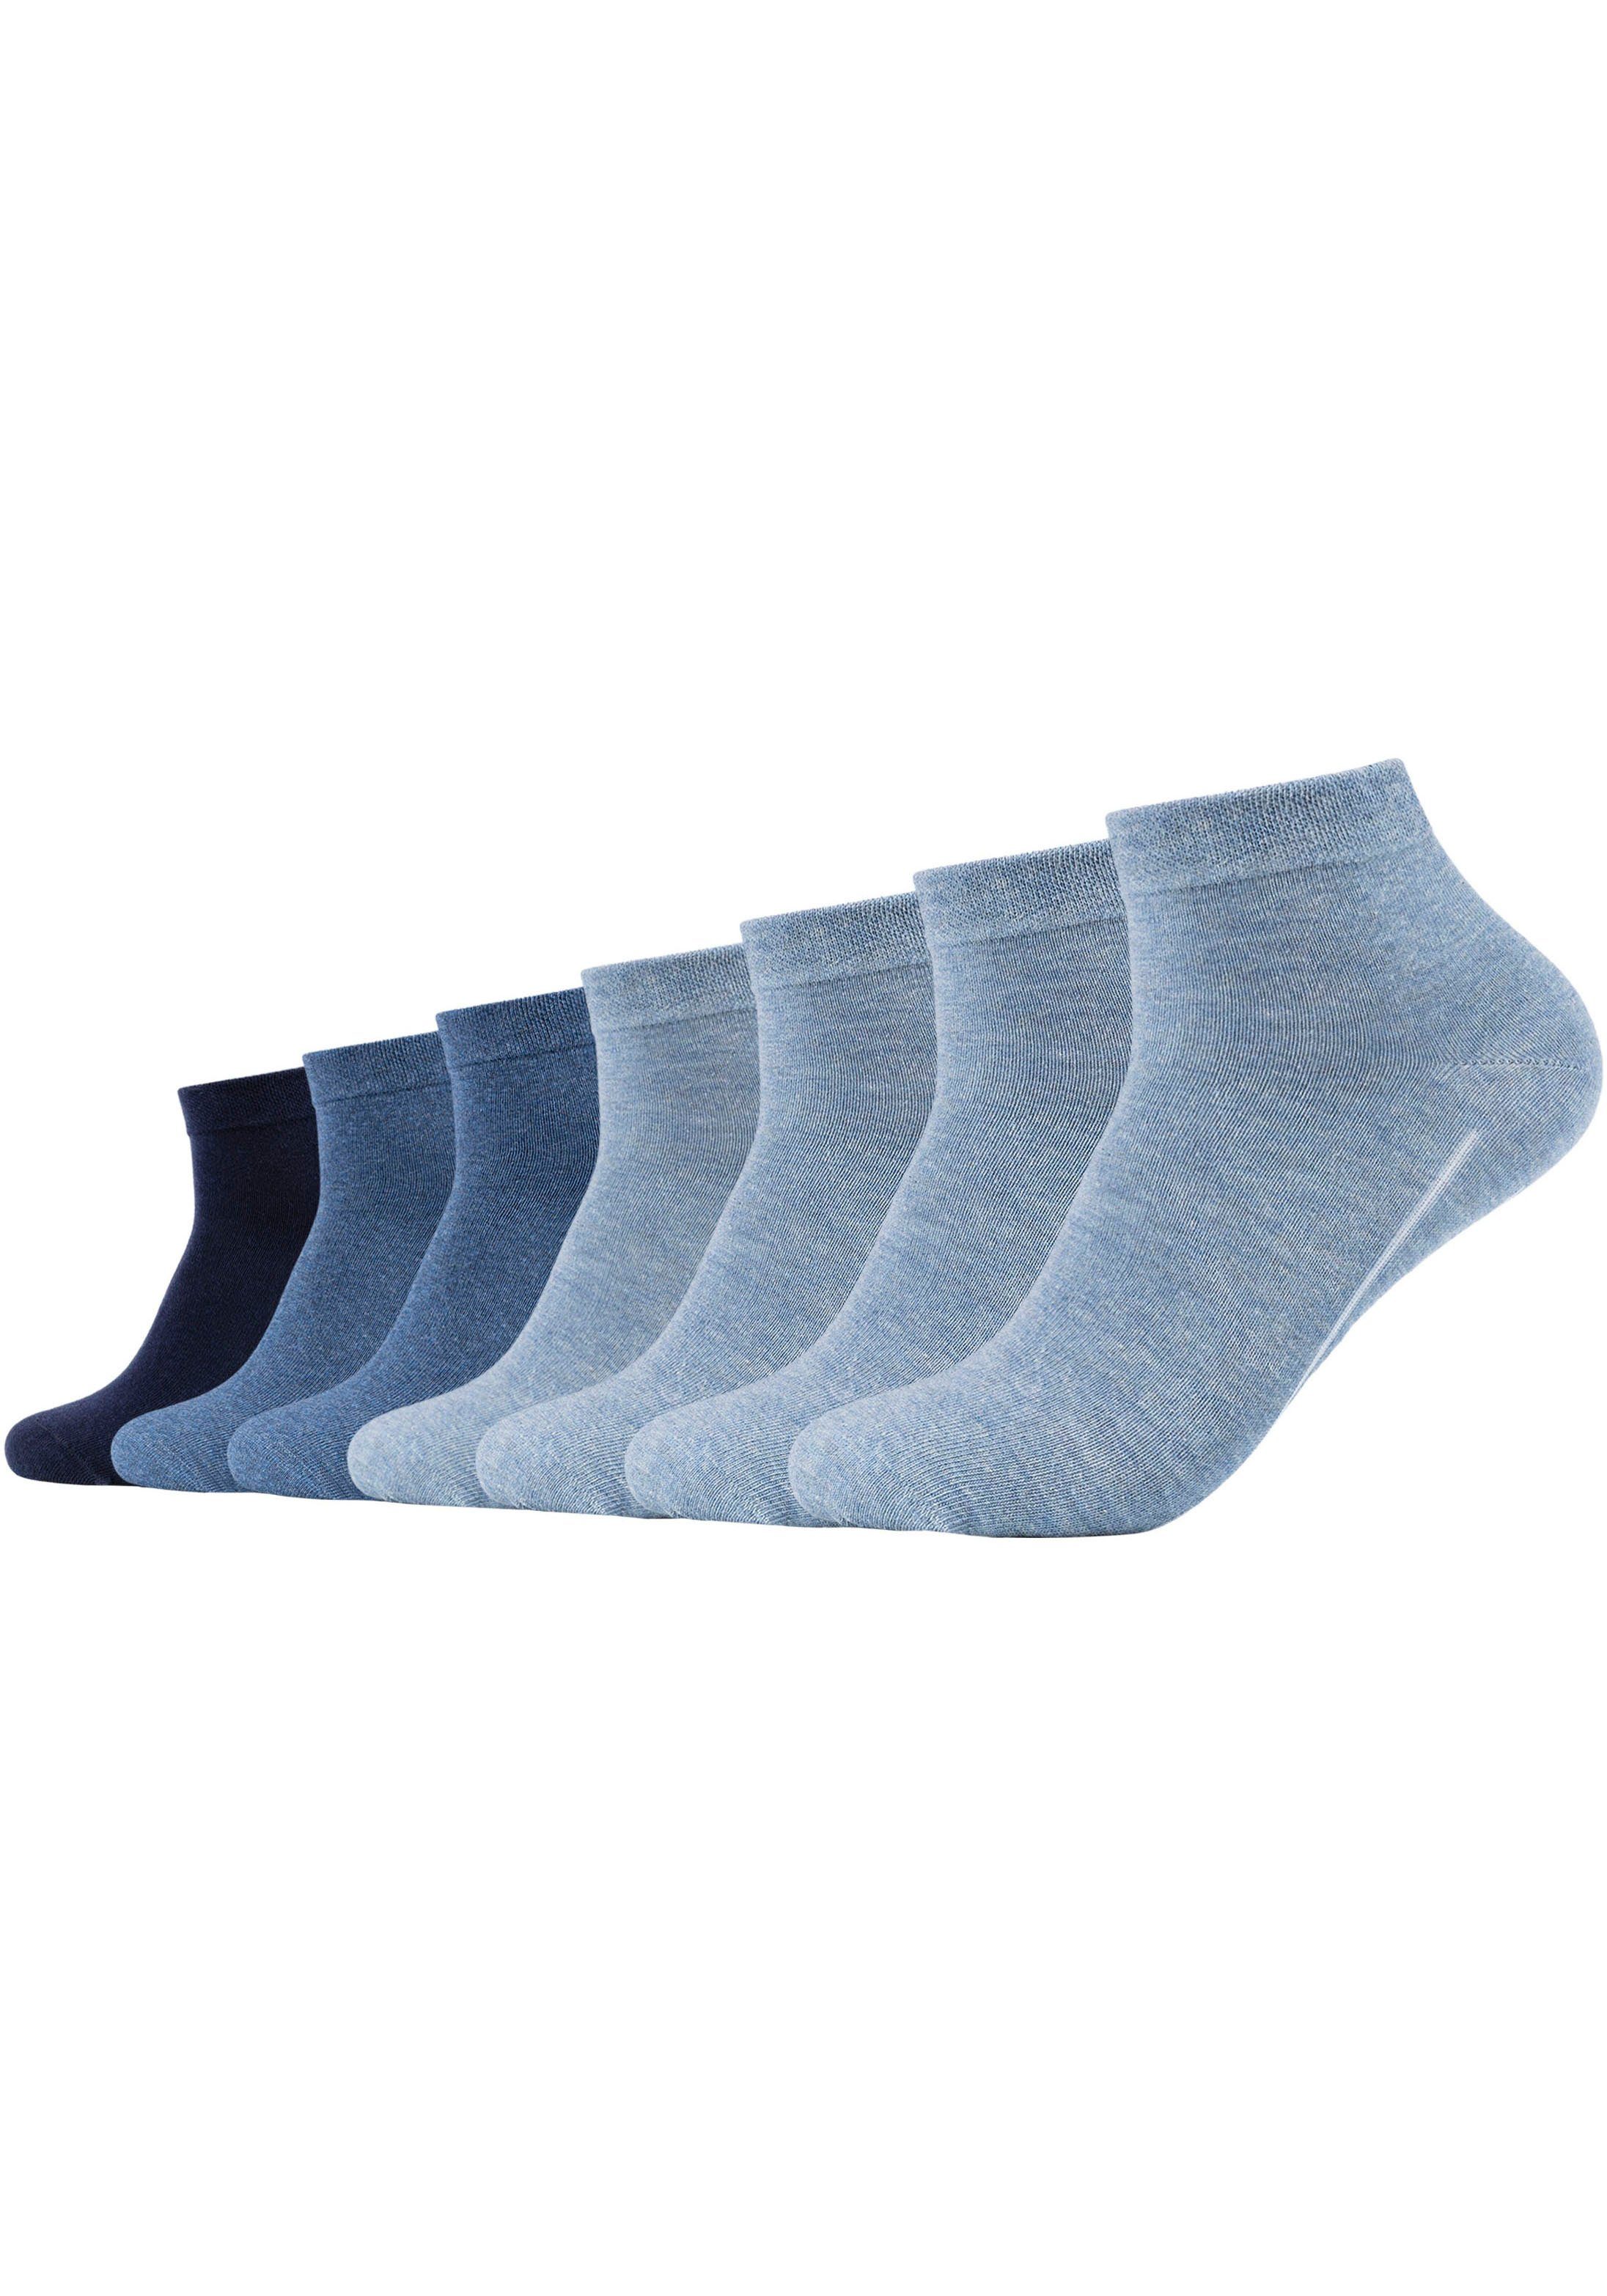 Camano Socken ca-soft (7-Paar) mit hohem Klimaregulierend: Komfortbund, weichem Baumwollanteil dank atmungsaktiv